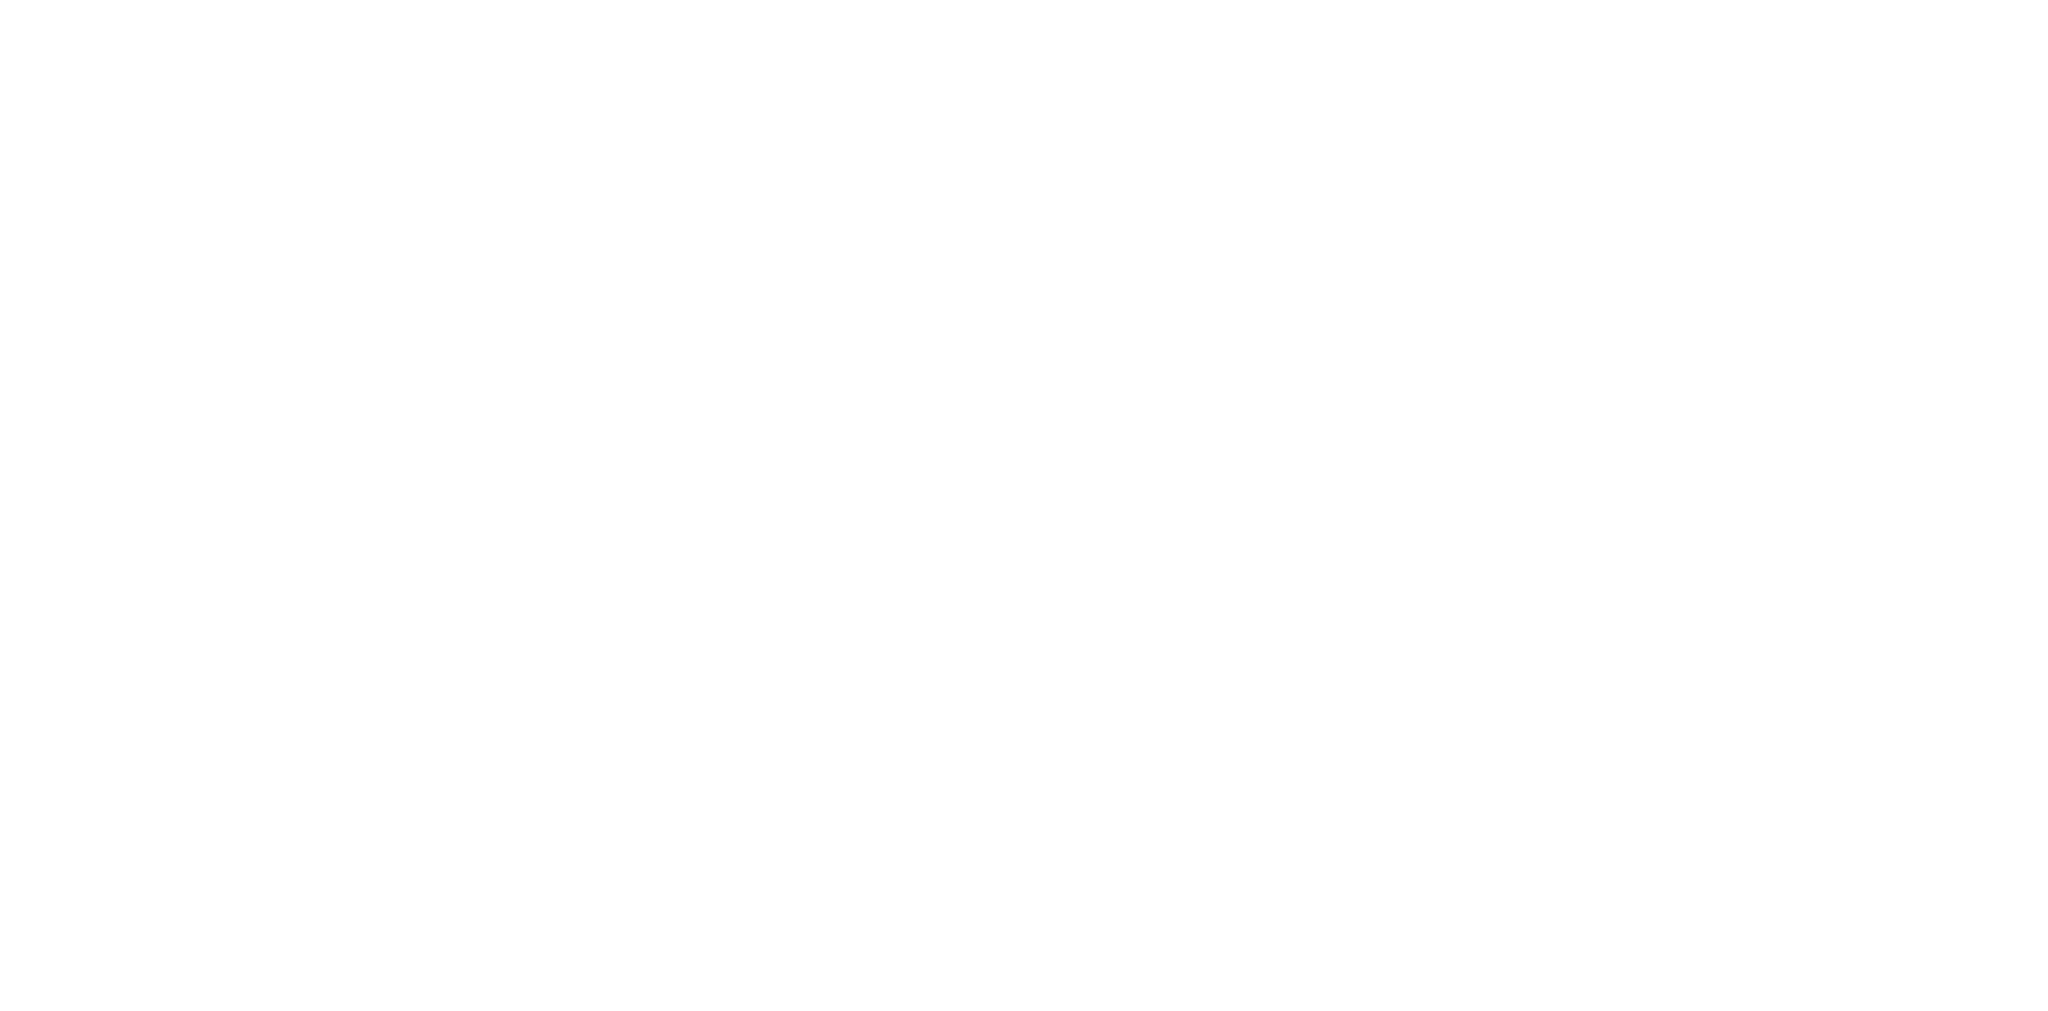 Drilling Innovative Solutions, LLC